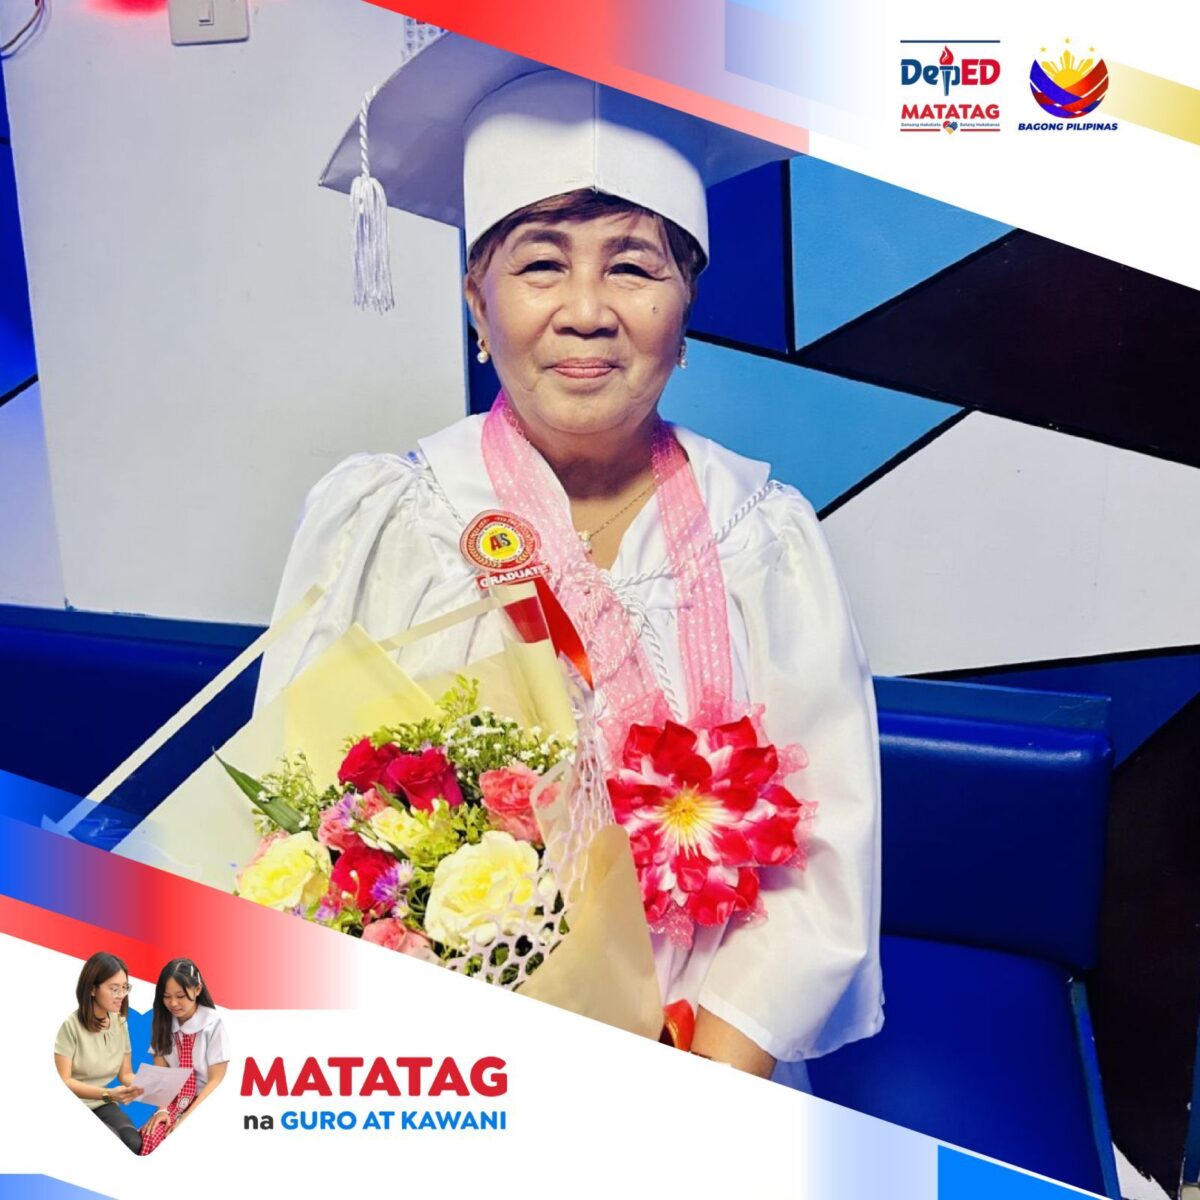 Senior citizen in South Cotabato graduates from junior high school